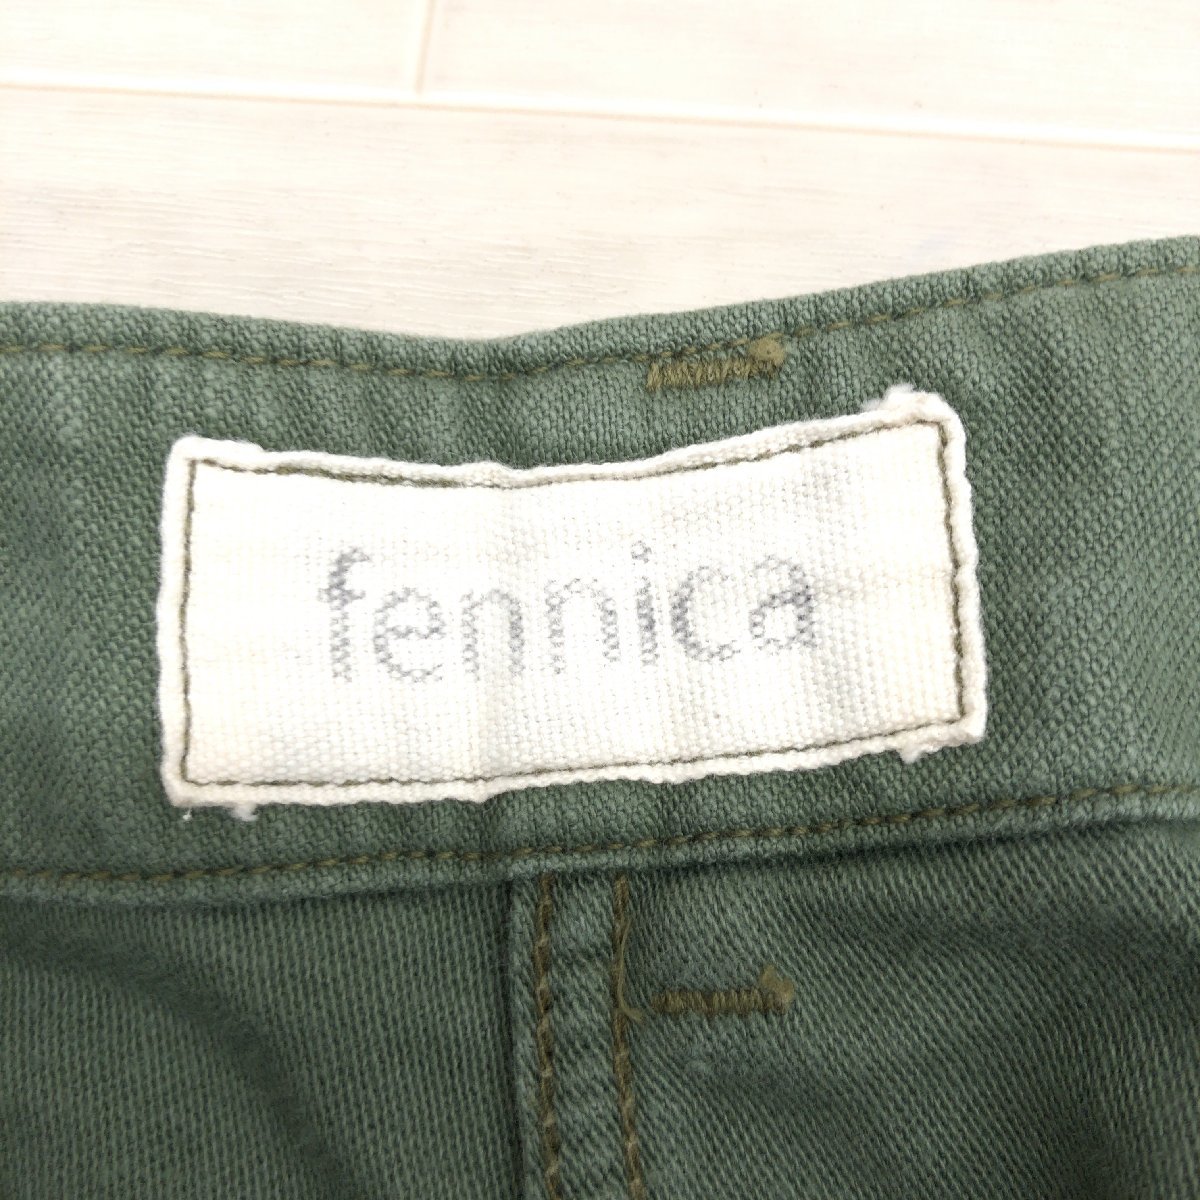 fennica×Orslowfenika× или s low милитари узкая юбка 1(S) w70 хаки оливковый сделано в Японии mi утечка длина внутренний стандартный товар женский 